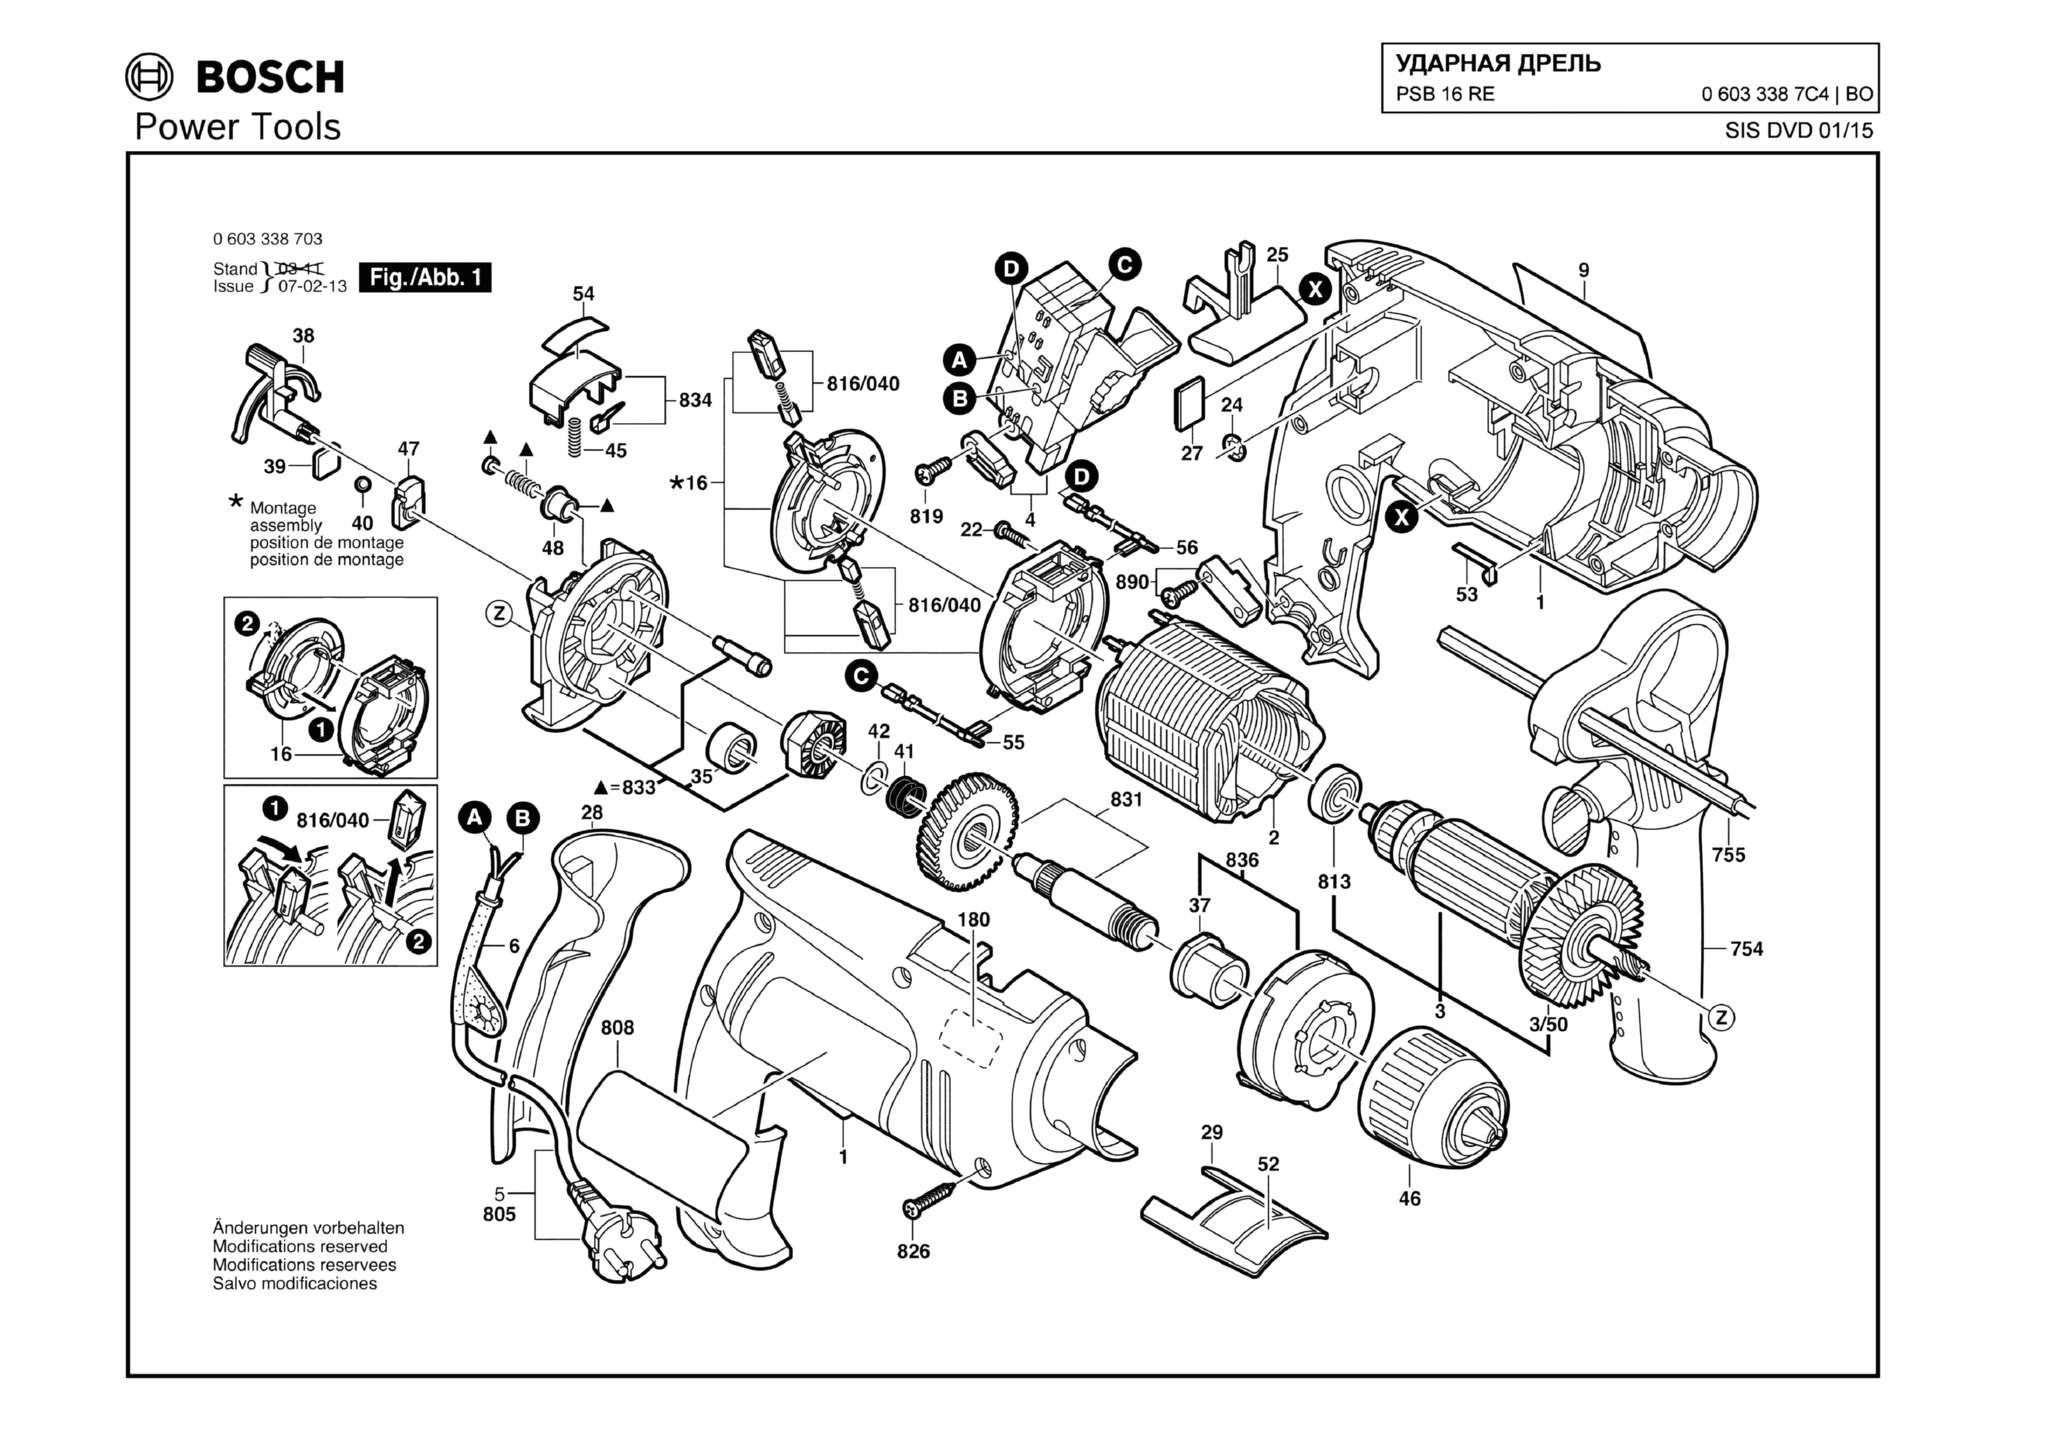 Запчасти, схема и деталировка Bosch PSB 16 RE (ТИП 06033387C4)